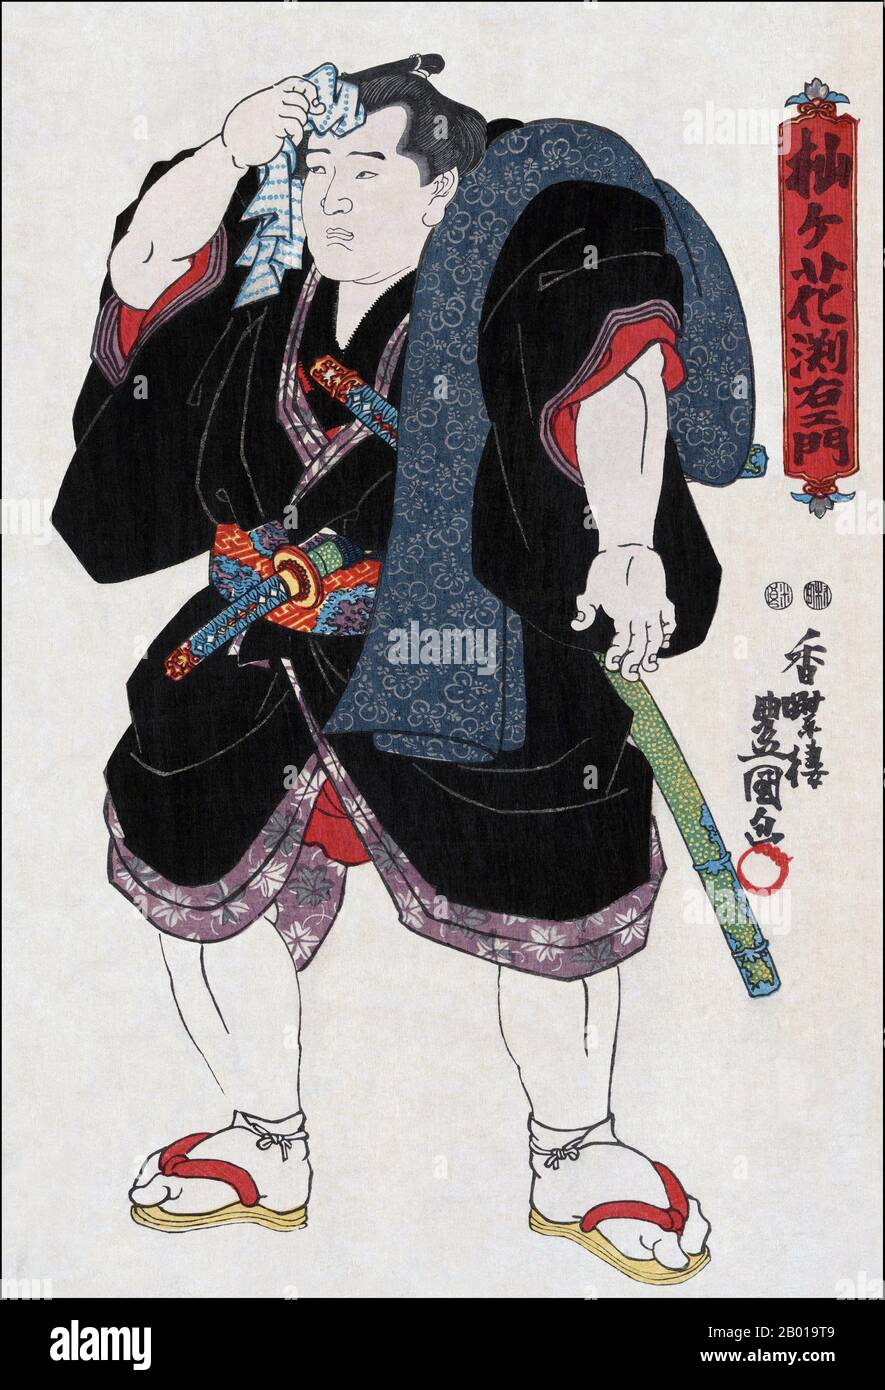 Japan: „Sumo Wrestler Somagahana Fuchiemon“. Ukiyo-e Holzschnitt von Utagawa Kunisada (1786. - 12. Januar 1865), 1850. Sumo ist ein wettbewerbsfähiger Vollkontakt-Sport, bei dem ein Ringer (Rikishi) versucht, einen anderen Ringer aus einem runden Ring (dohyō) zu zwingen oder den Boden mit etwas anderem als den Fußsohlen zu berühren. Der Sport entstand in Japan, dem einzigen Land, in dem er professionell ausgeübt wird. Es wird allgemein als Gendai budō (eine moderne japanische Kampfkunst) angesehen, obwohl diese Definition falsch ist, da der Sport eine Geschichte hat, die viele Jahrhunderte umfasst. Stockfoto